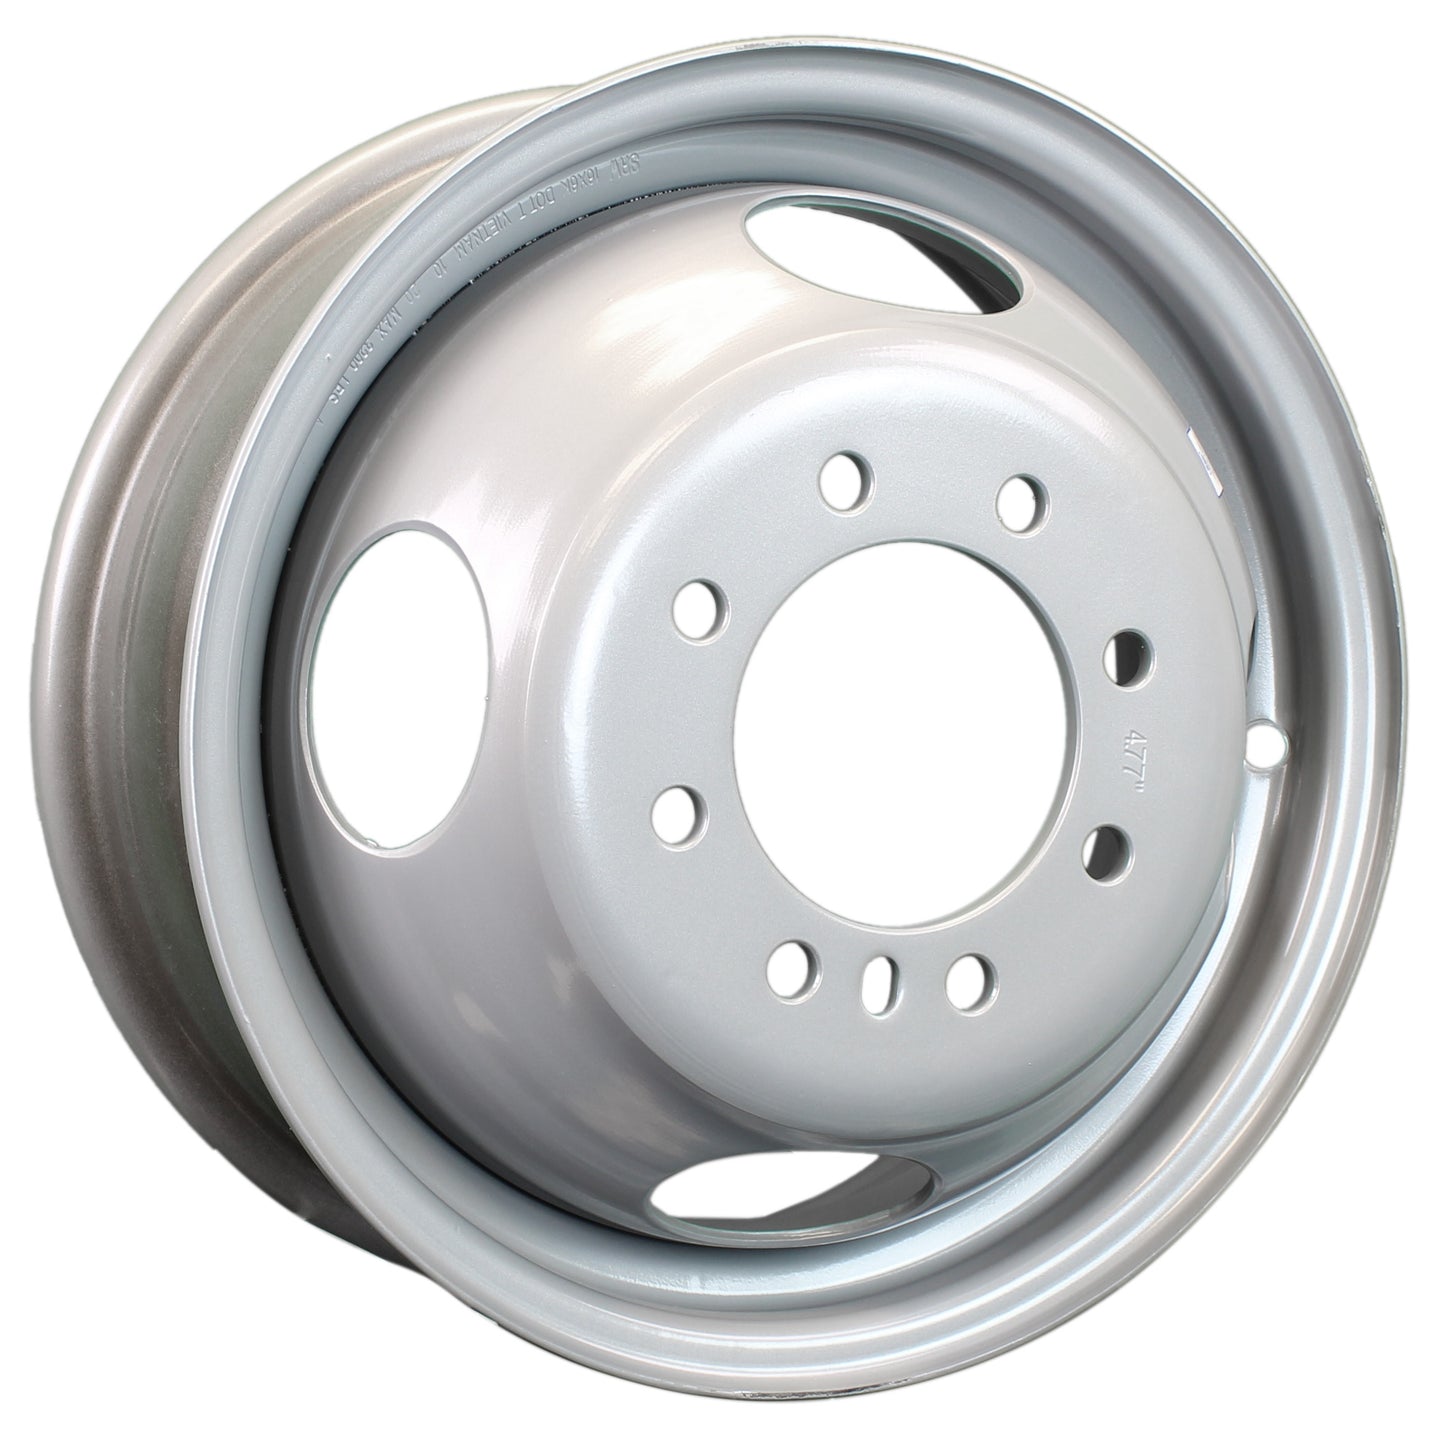 Dually Dual Silver Grey Trailer Wheel Rim 16 Inch 16X6 8 Lug On 6.5 Inch Center